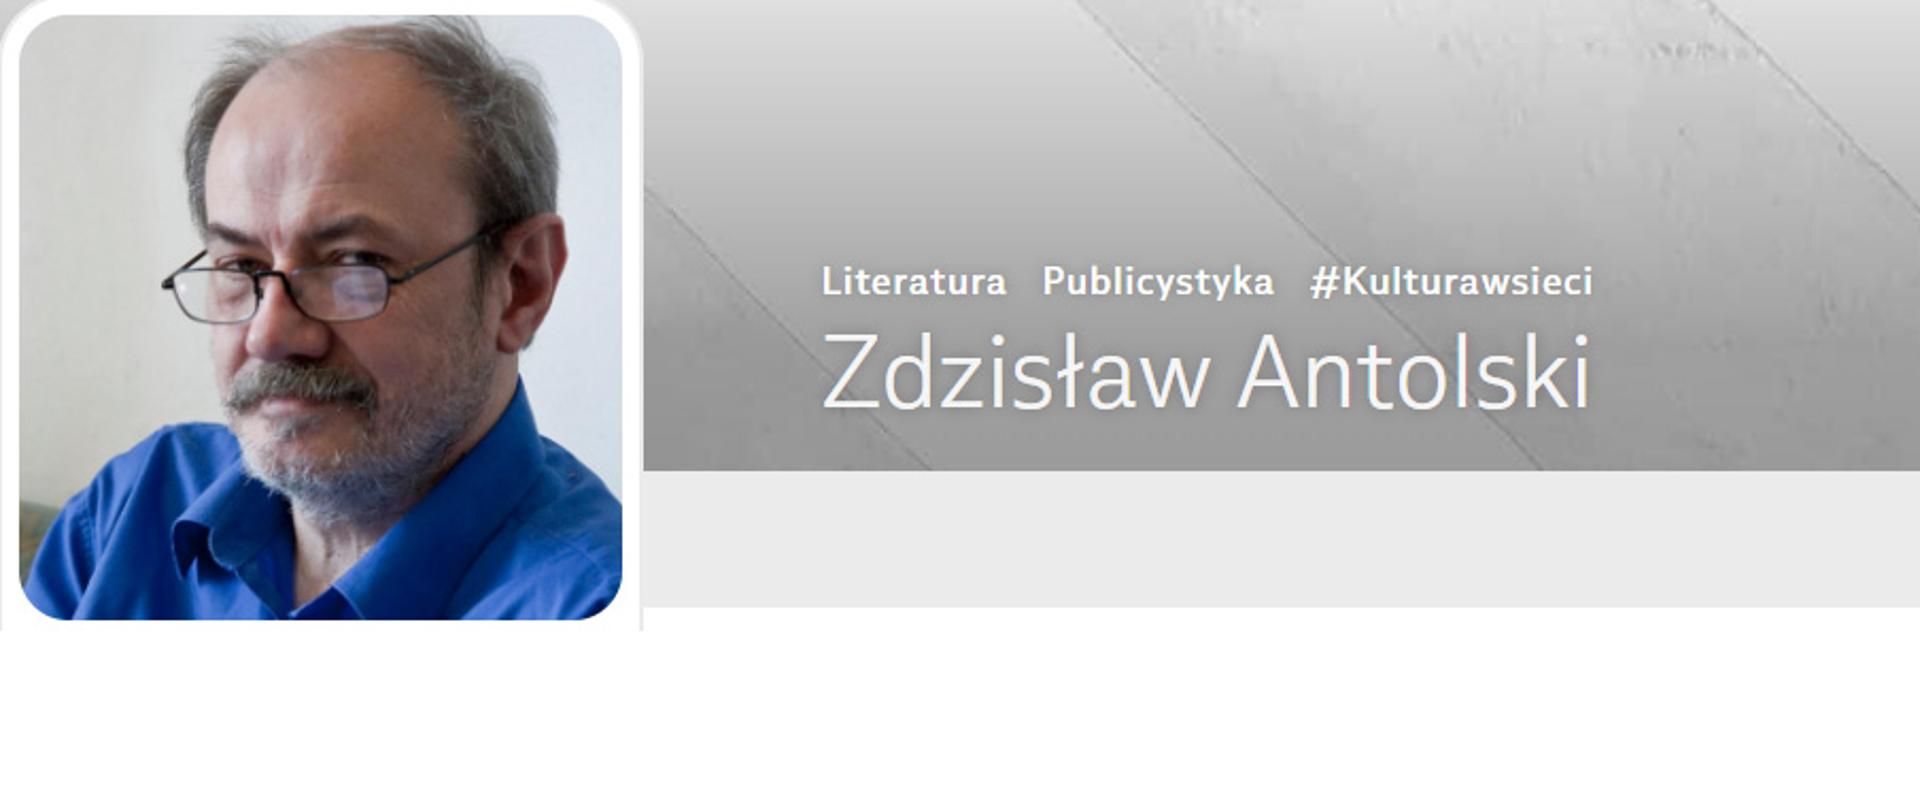 Zdzisław Antolski